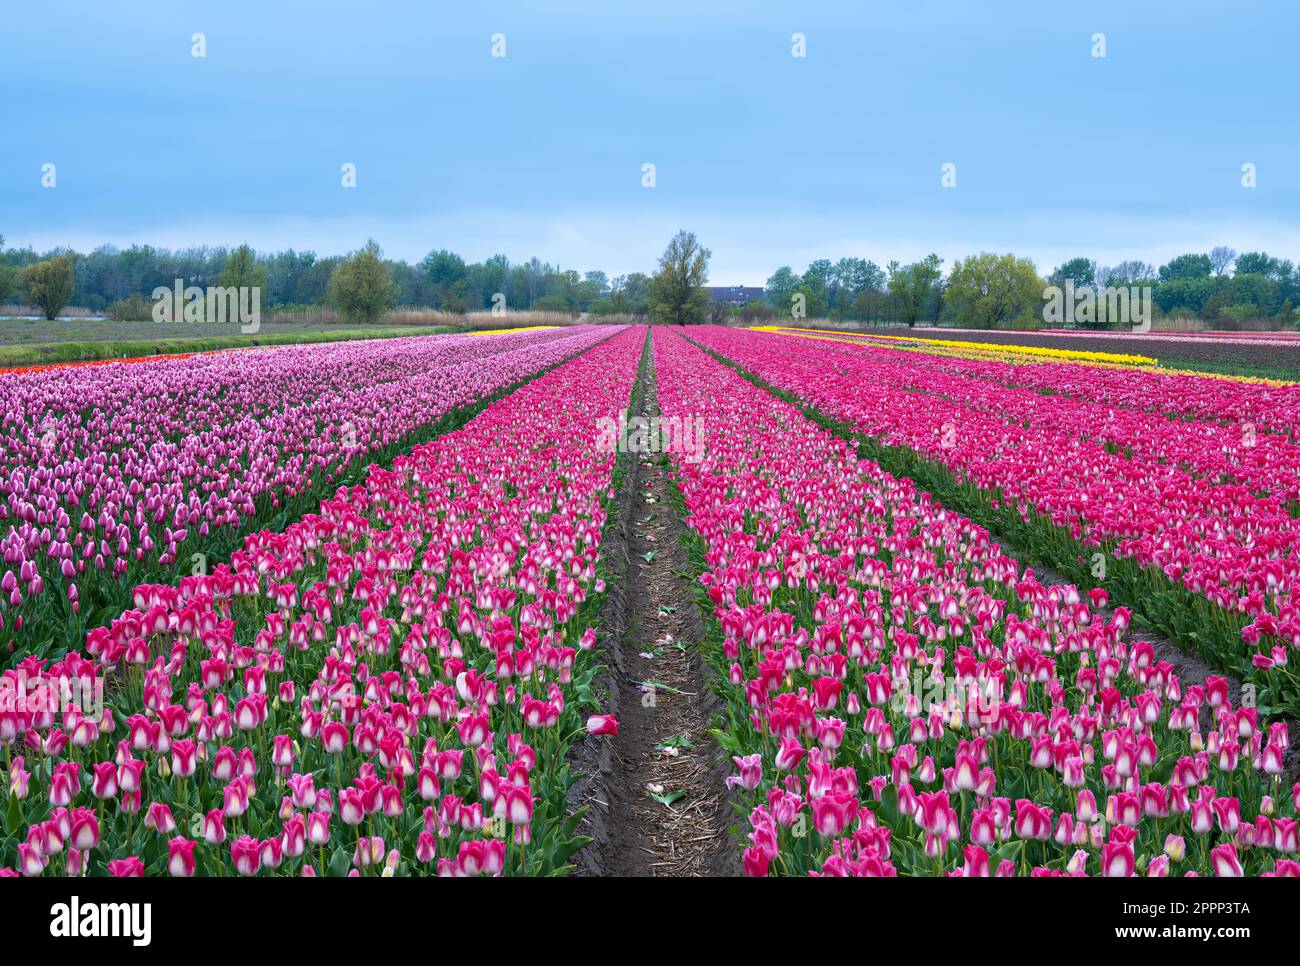 Ein riesiges Feld aus rosa und lila Tulpen in perfekten Reihen, umgeben von einem friedlichen Himmel. Eine wunderschöne Ausstellung der Natur im Überfluss in den Niederlanden. Stockfoto